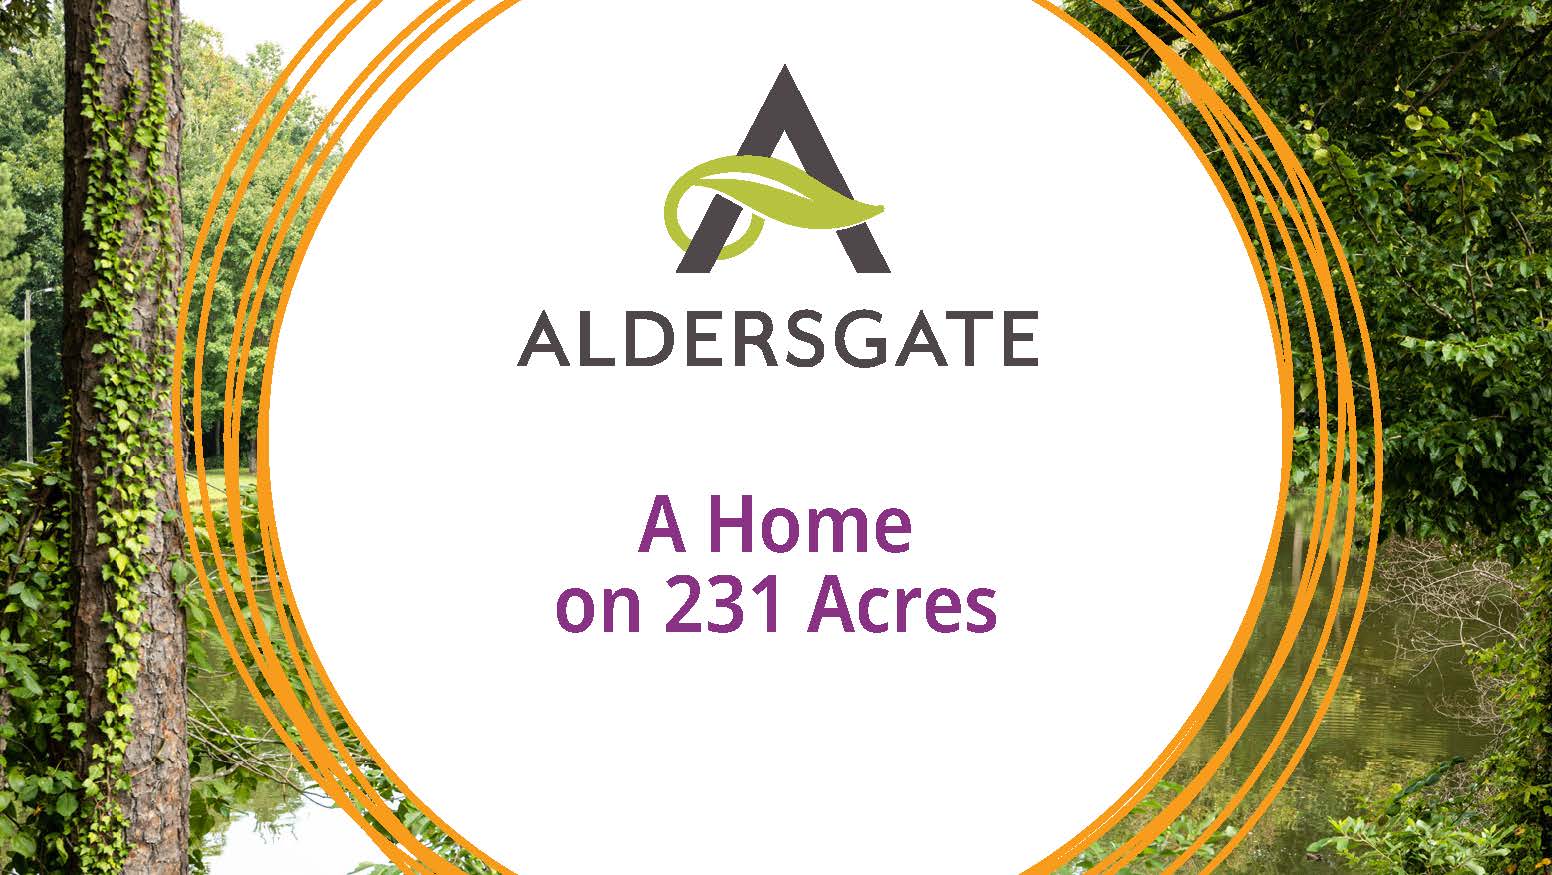 A home on 231 acres - Aldersgate Life Plan Community